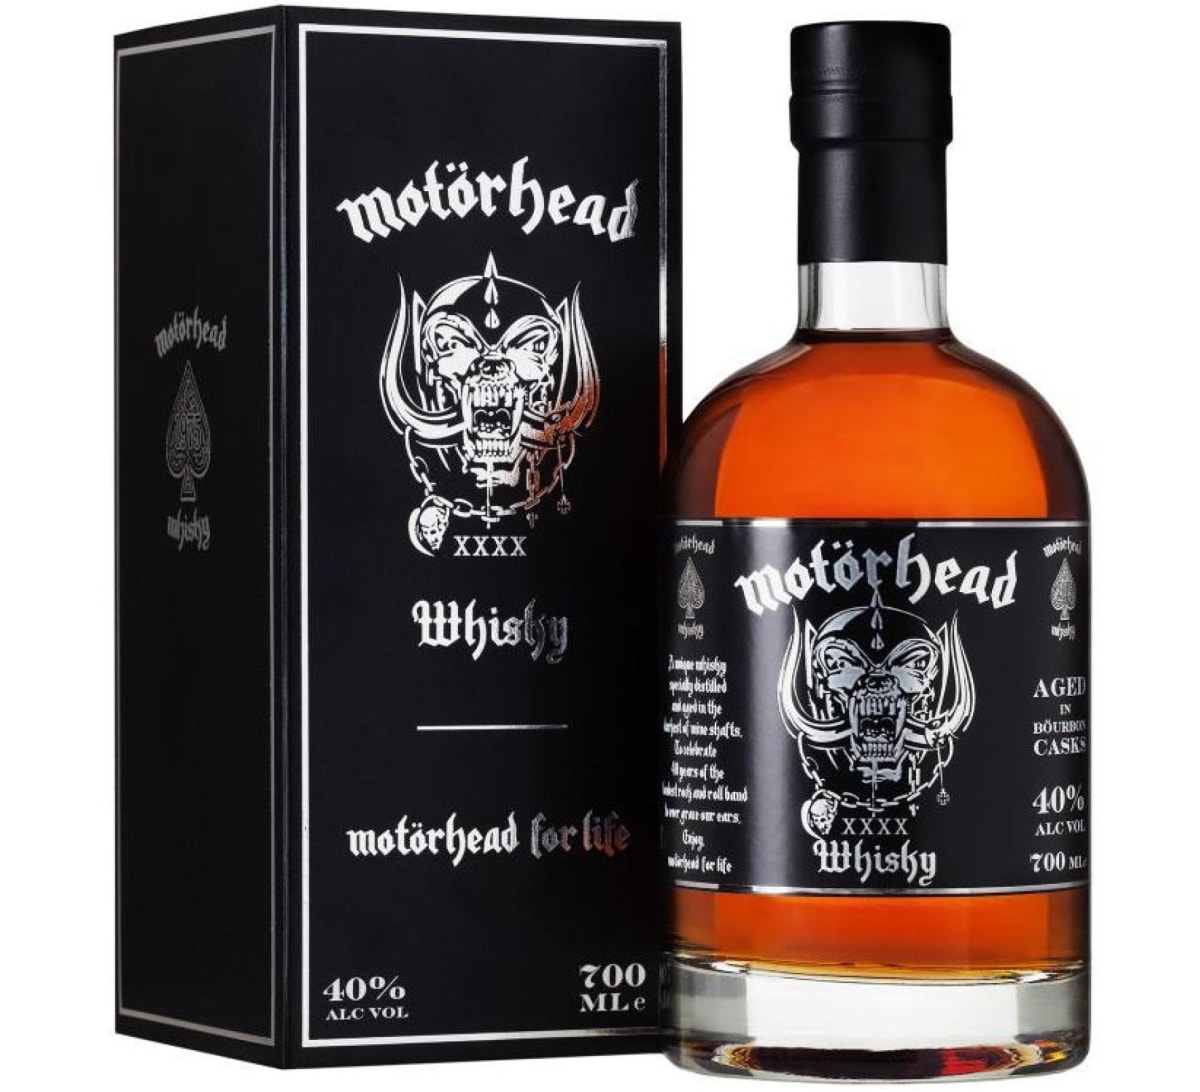 Motörhead XXXX whisky